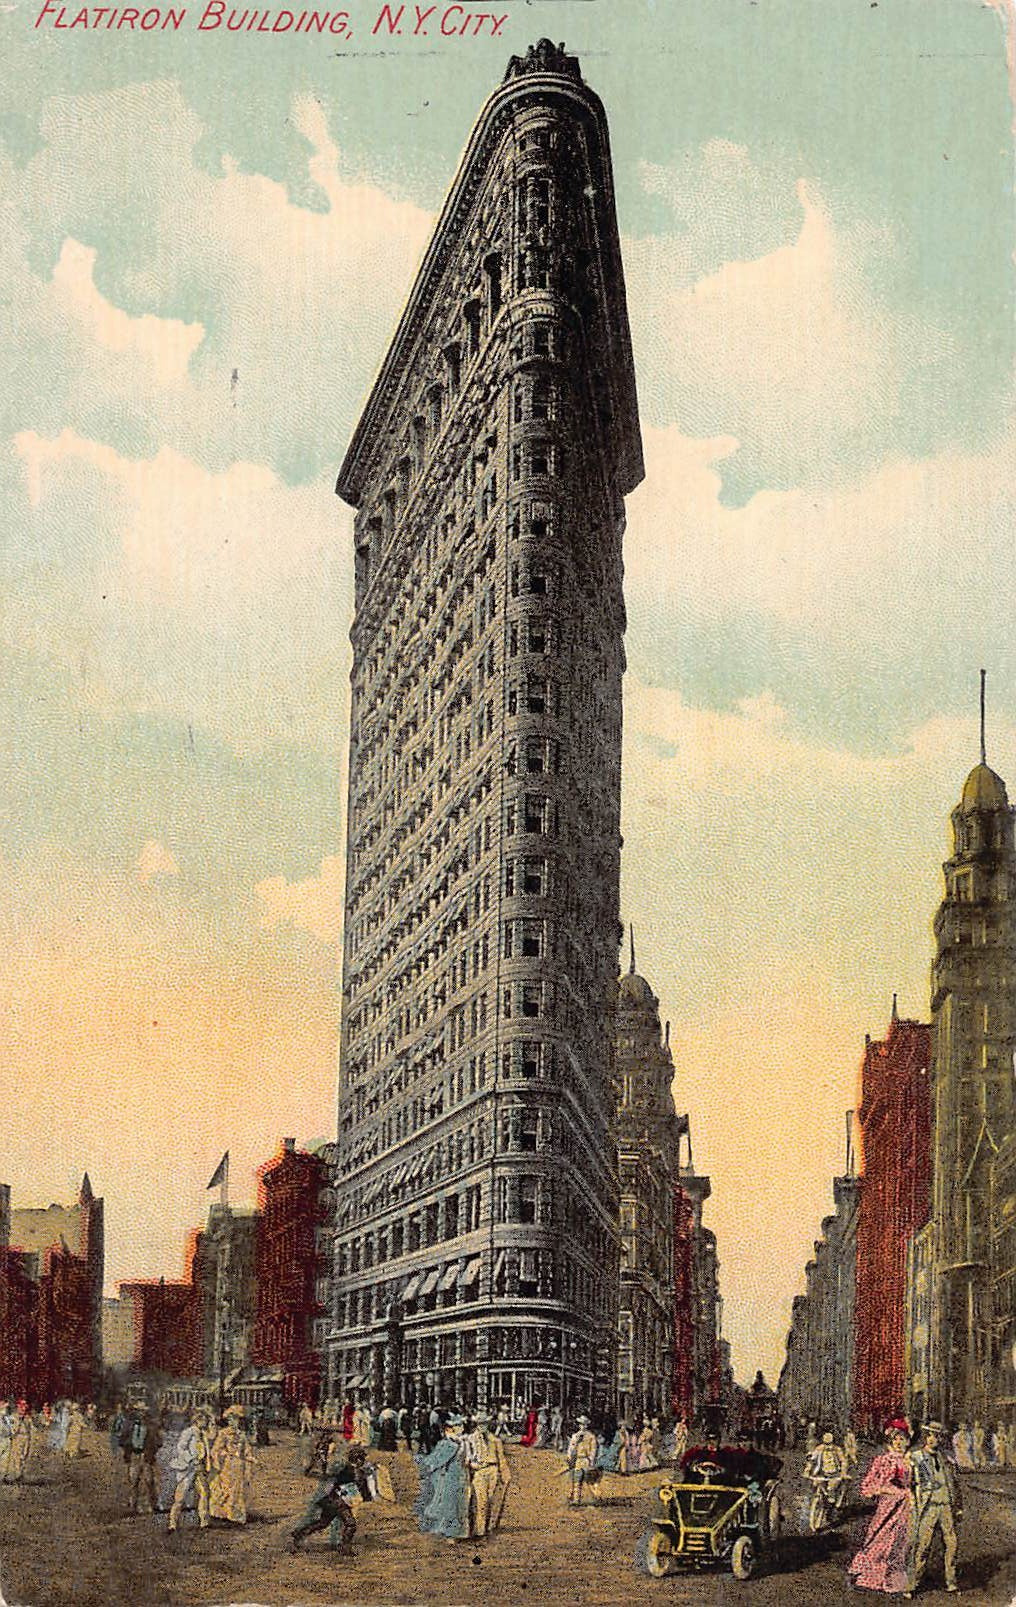 Flatiron Building, Manhattan, New York City, N.Y., early postcard, used